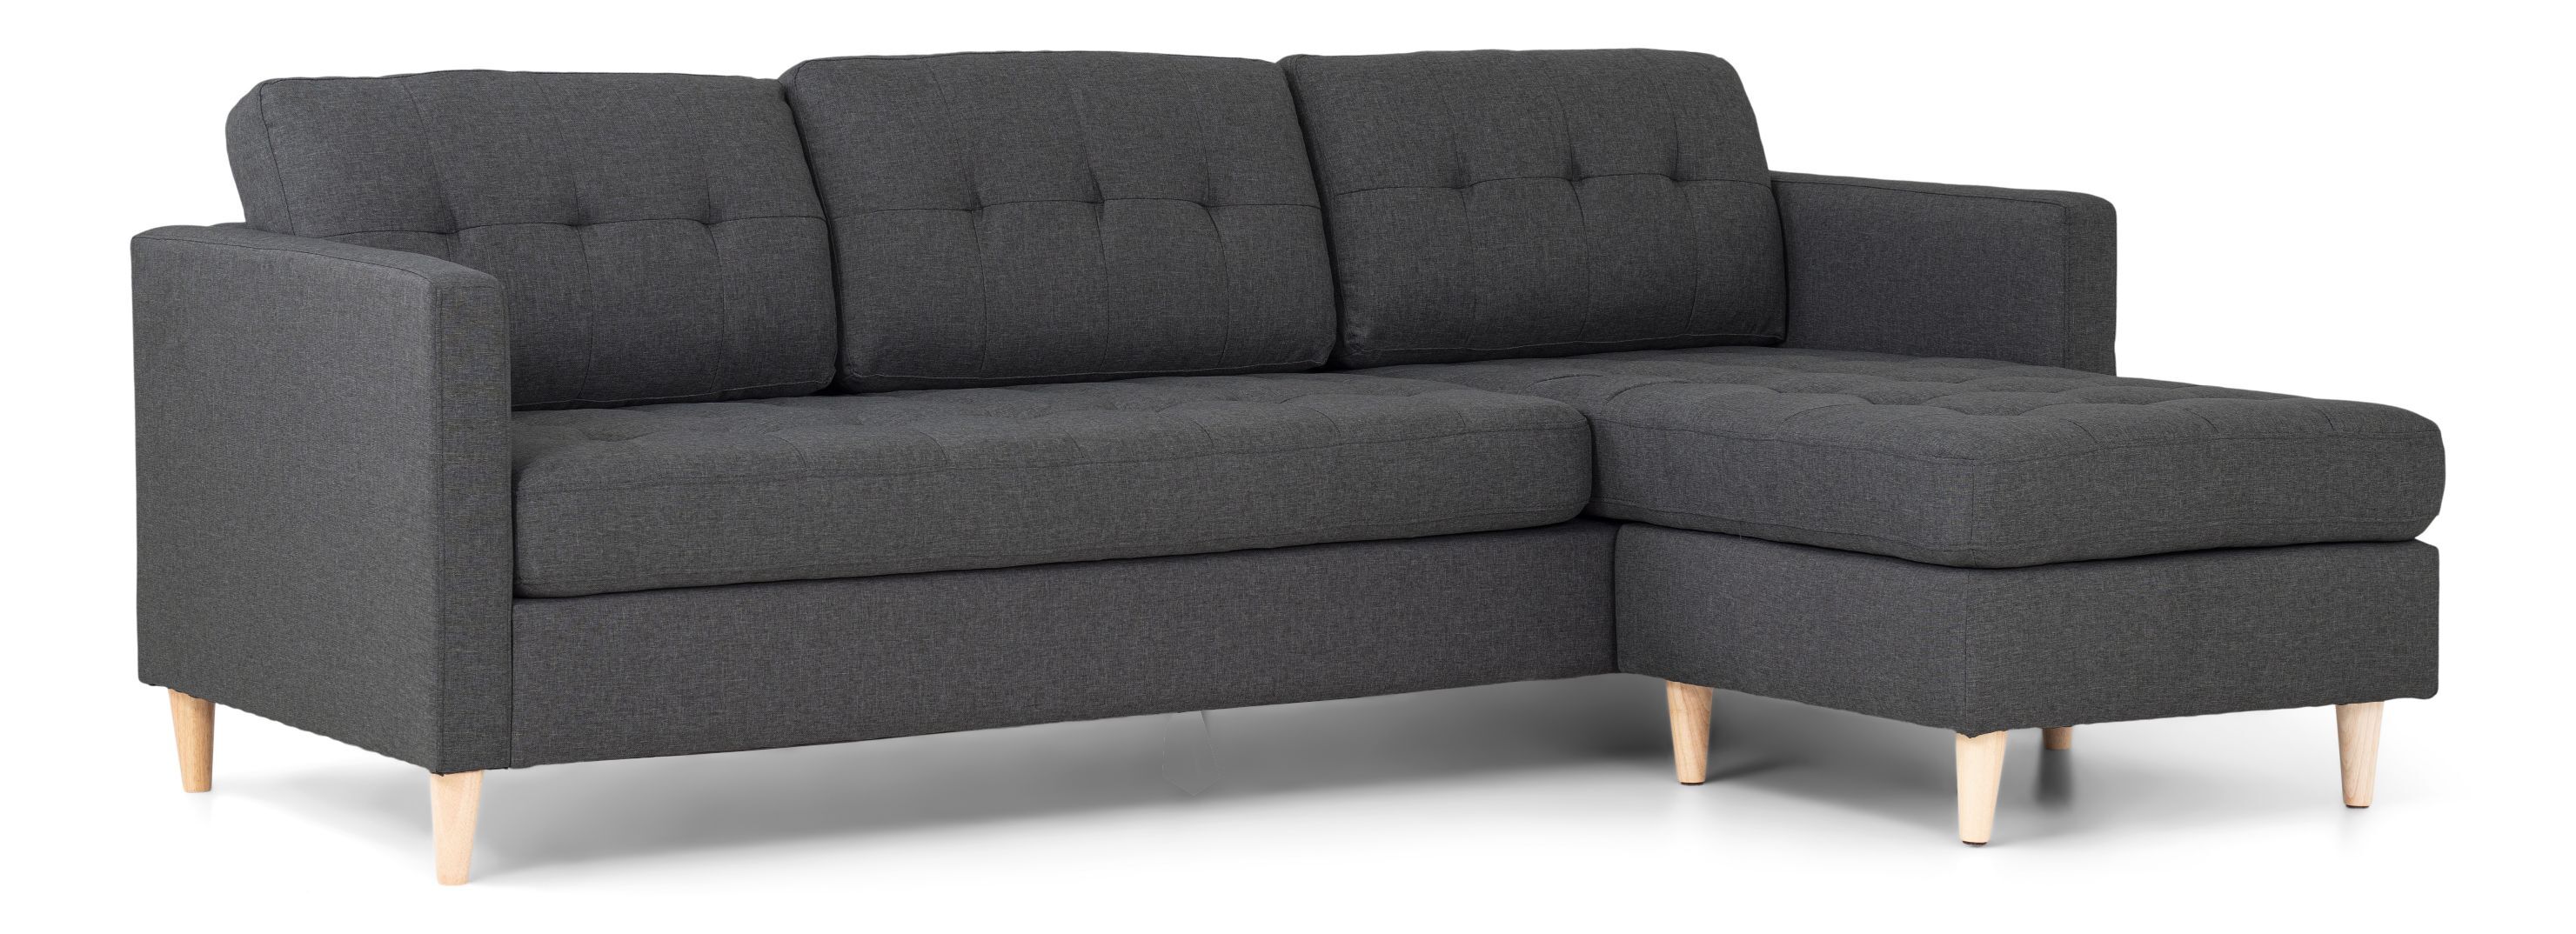 Marino sofa, sjeselongsofa høyre eller venstrevent i stoff mørk grå og med treben.